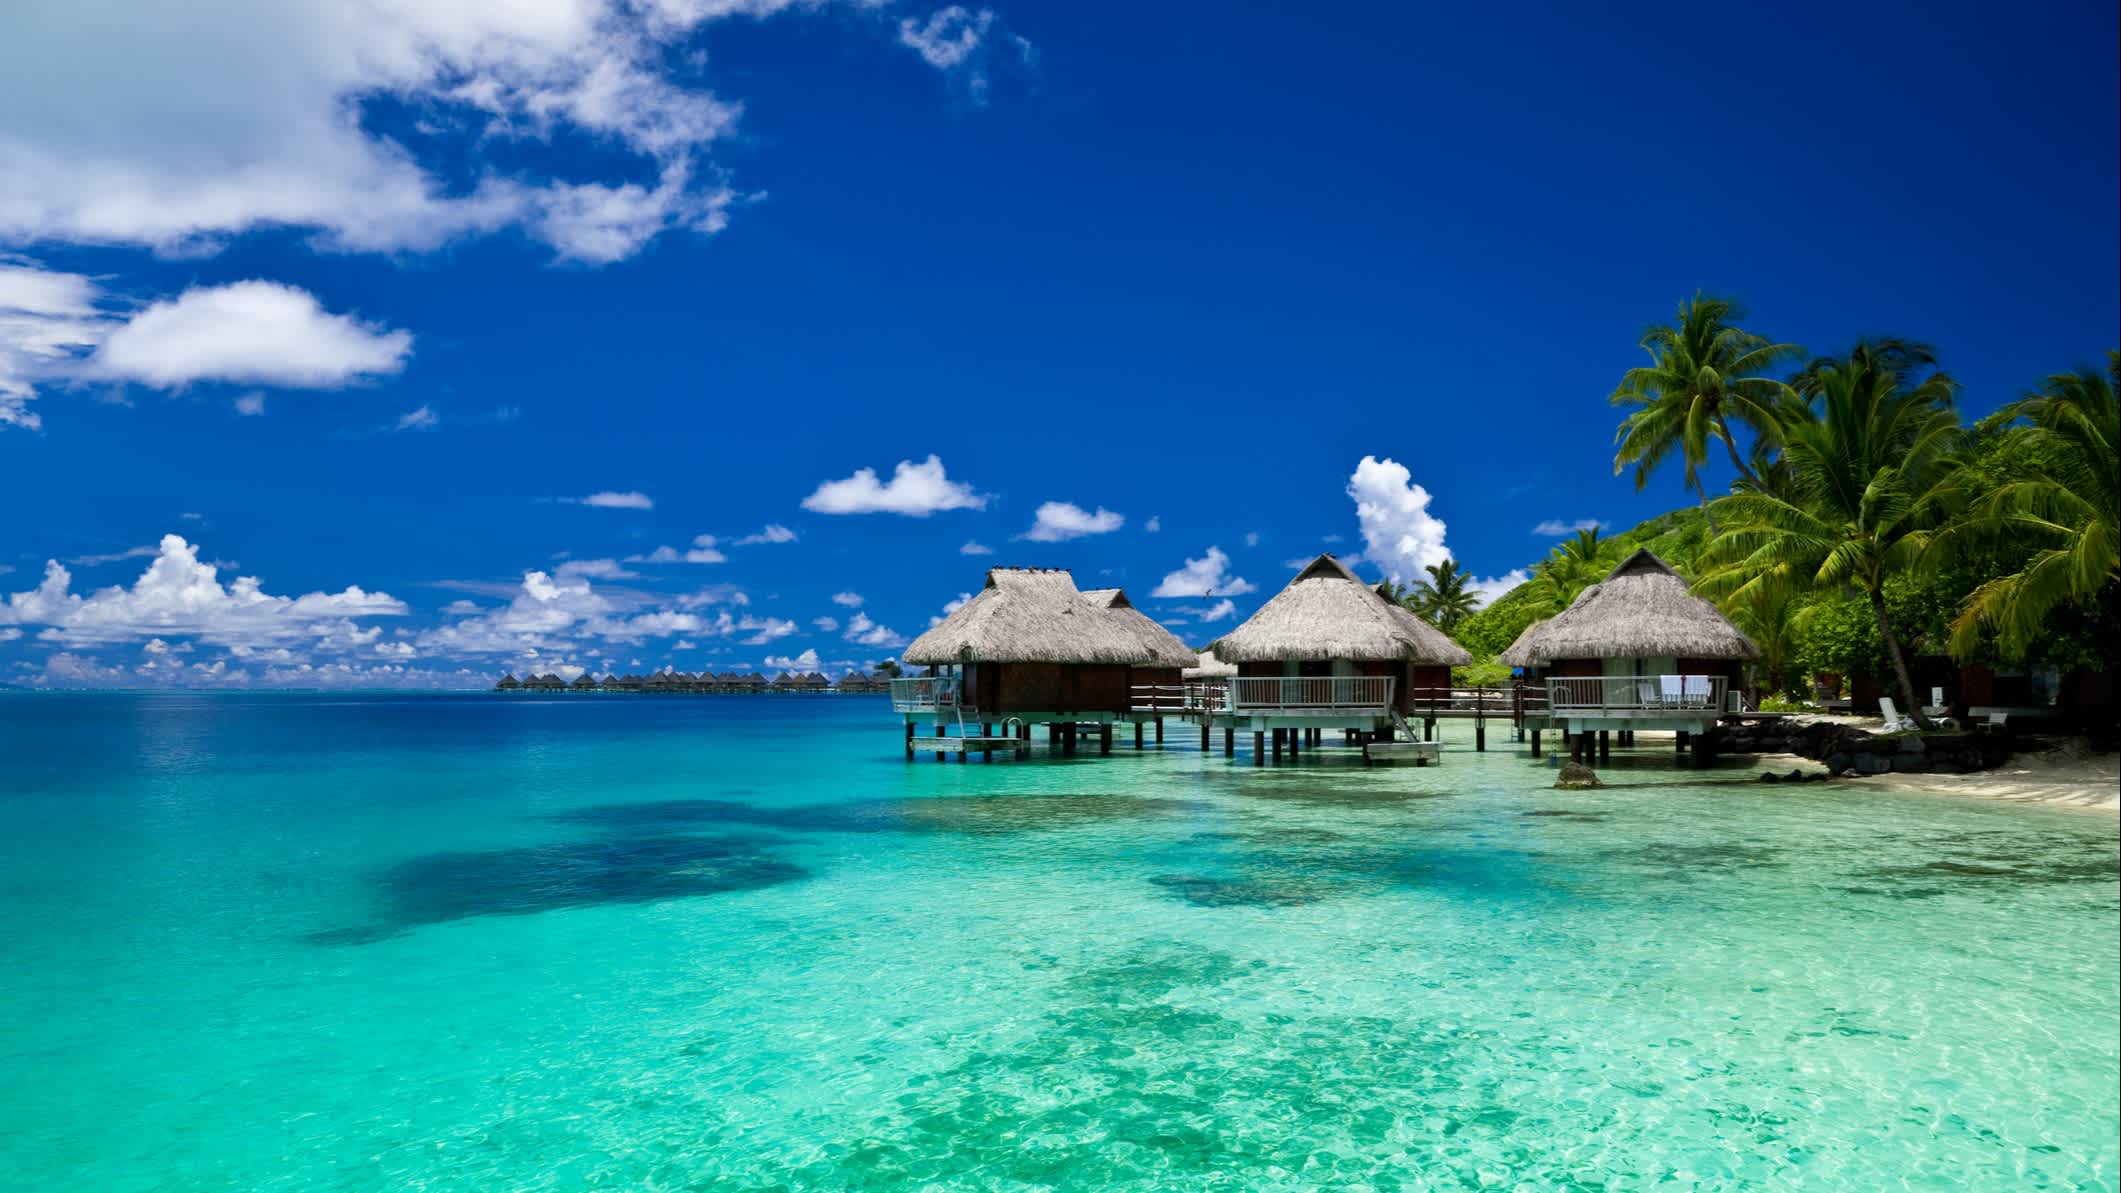 Blick auf das Luxus-Resort auf Bora Bora, Französisch-Polynesien